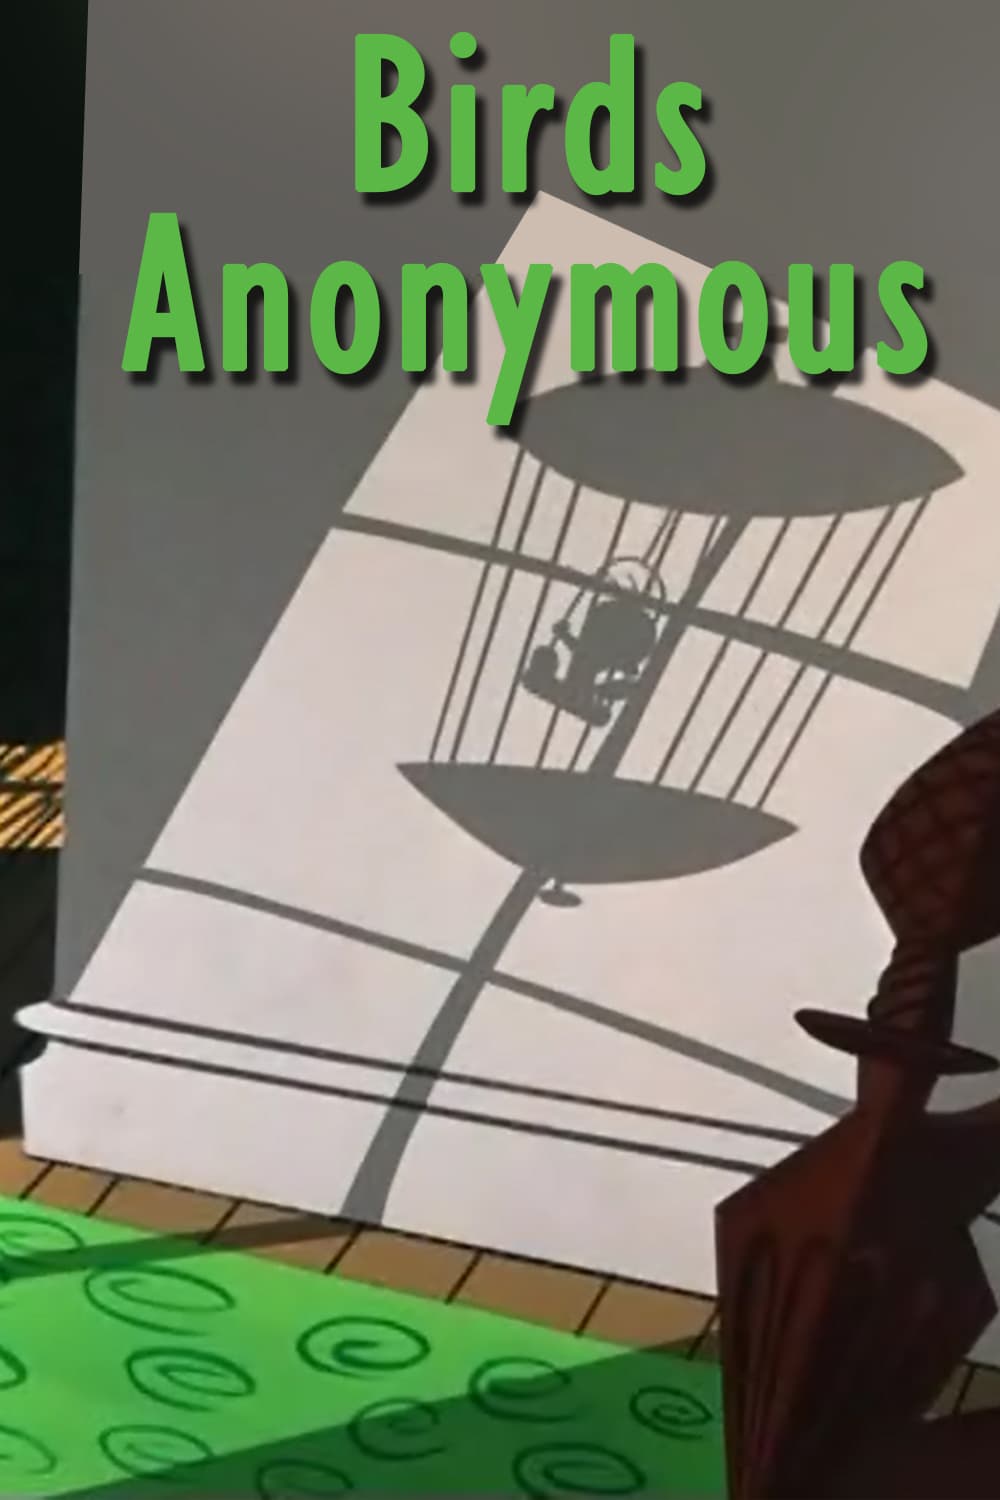 Die Anonymen Vogelfresser